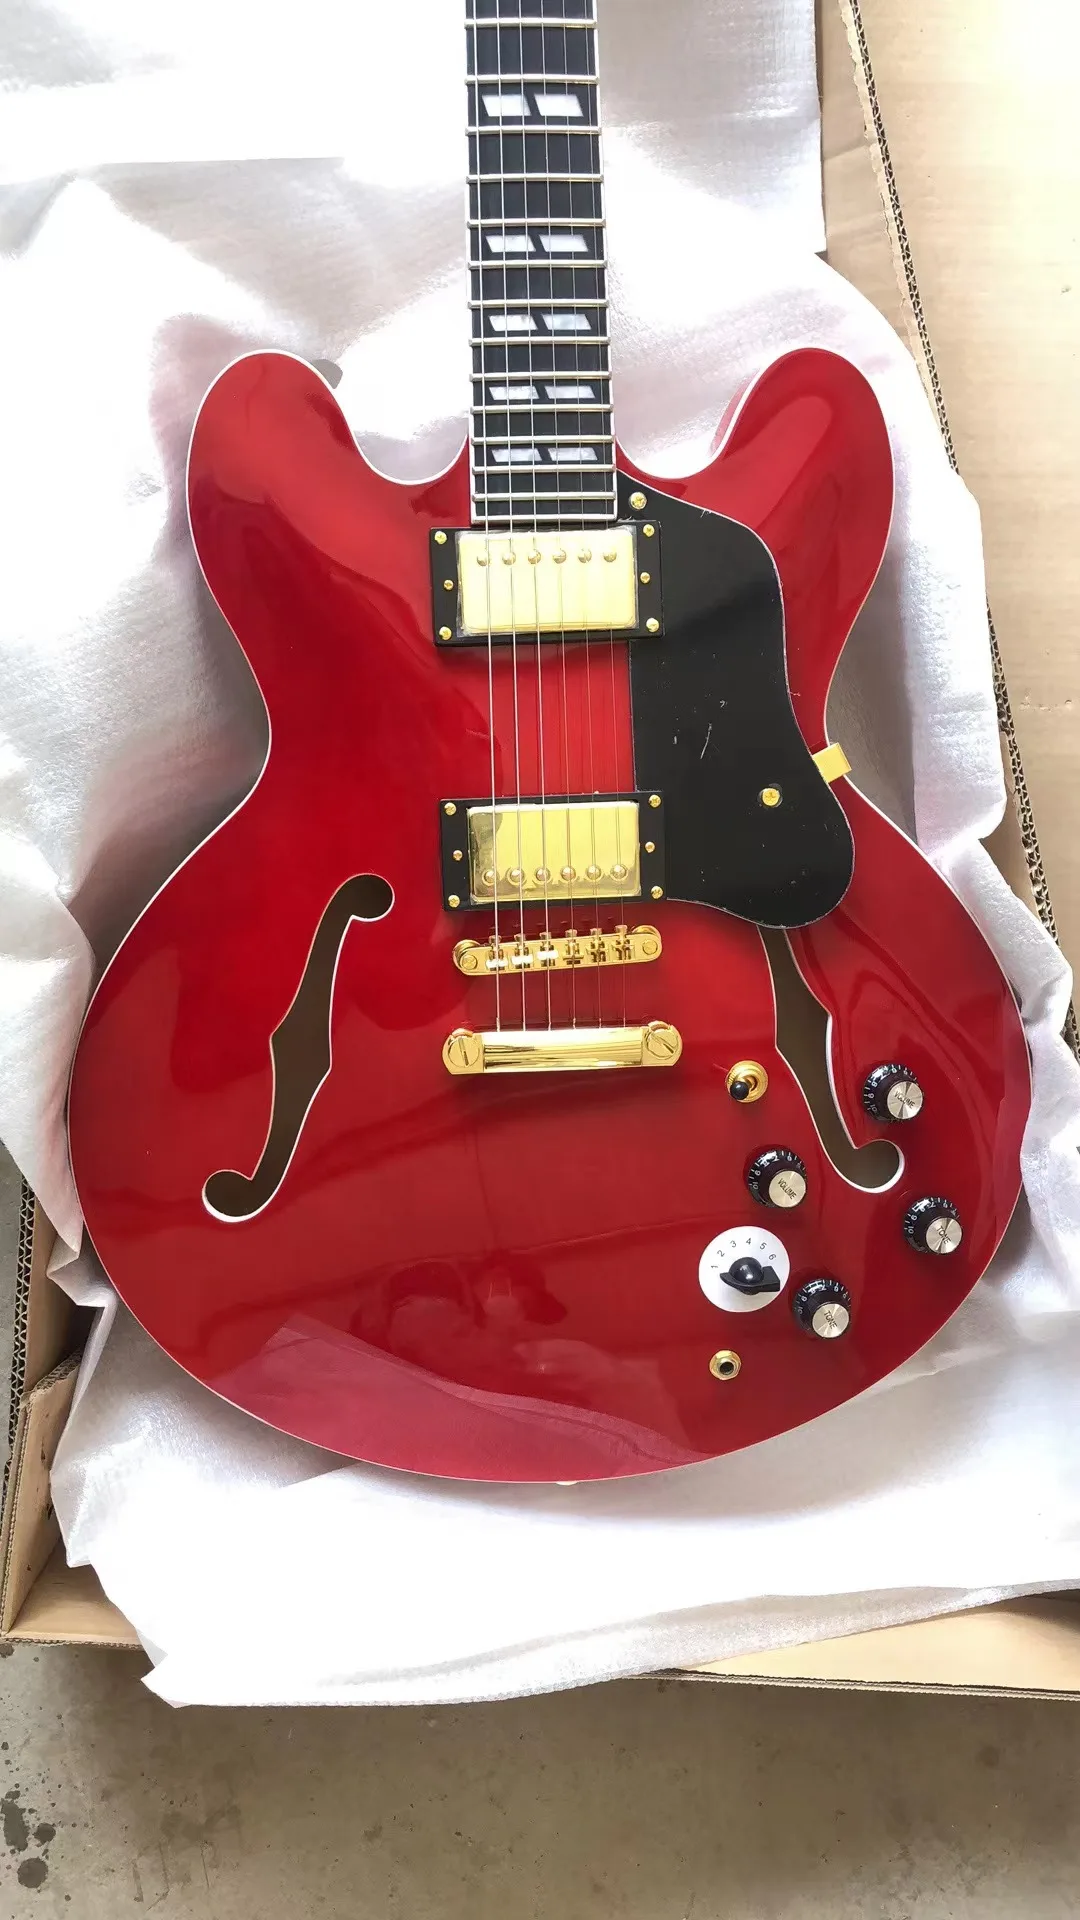 

Красная 335 электрическая гитара Jazz полупустотелый корпус F отверстие золото фурнитура глянцевая отделка Бесплатная доставка